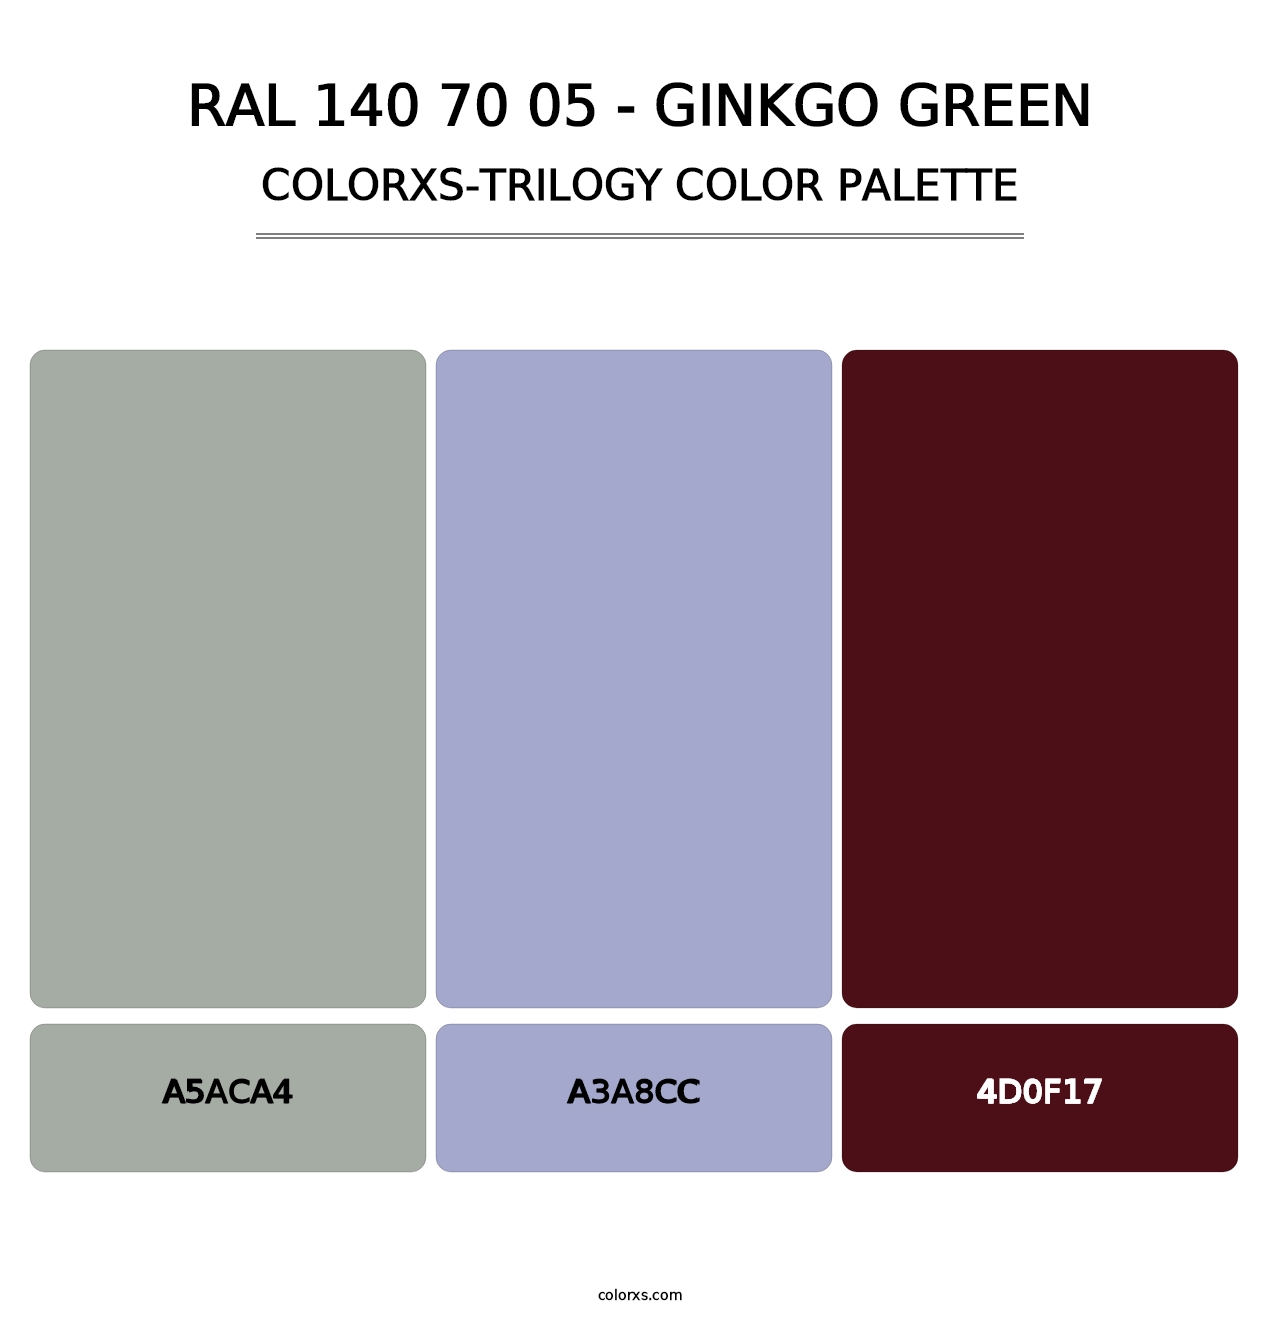 RAL 140 70 05 - Ginkgo Green - Colorxs Trilogy Palette